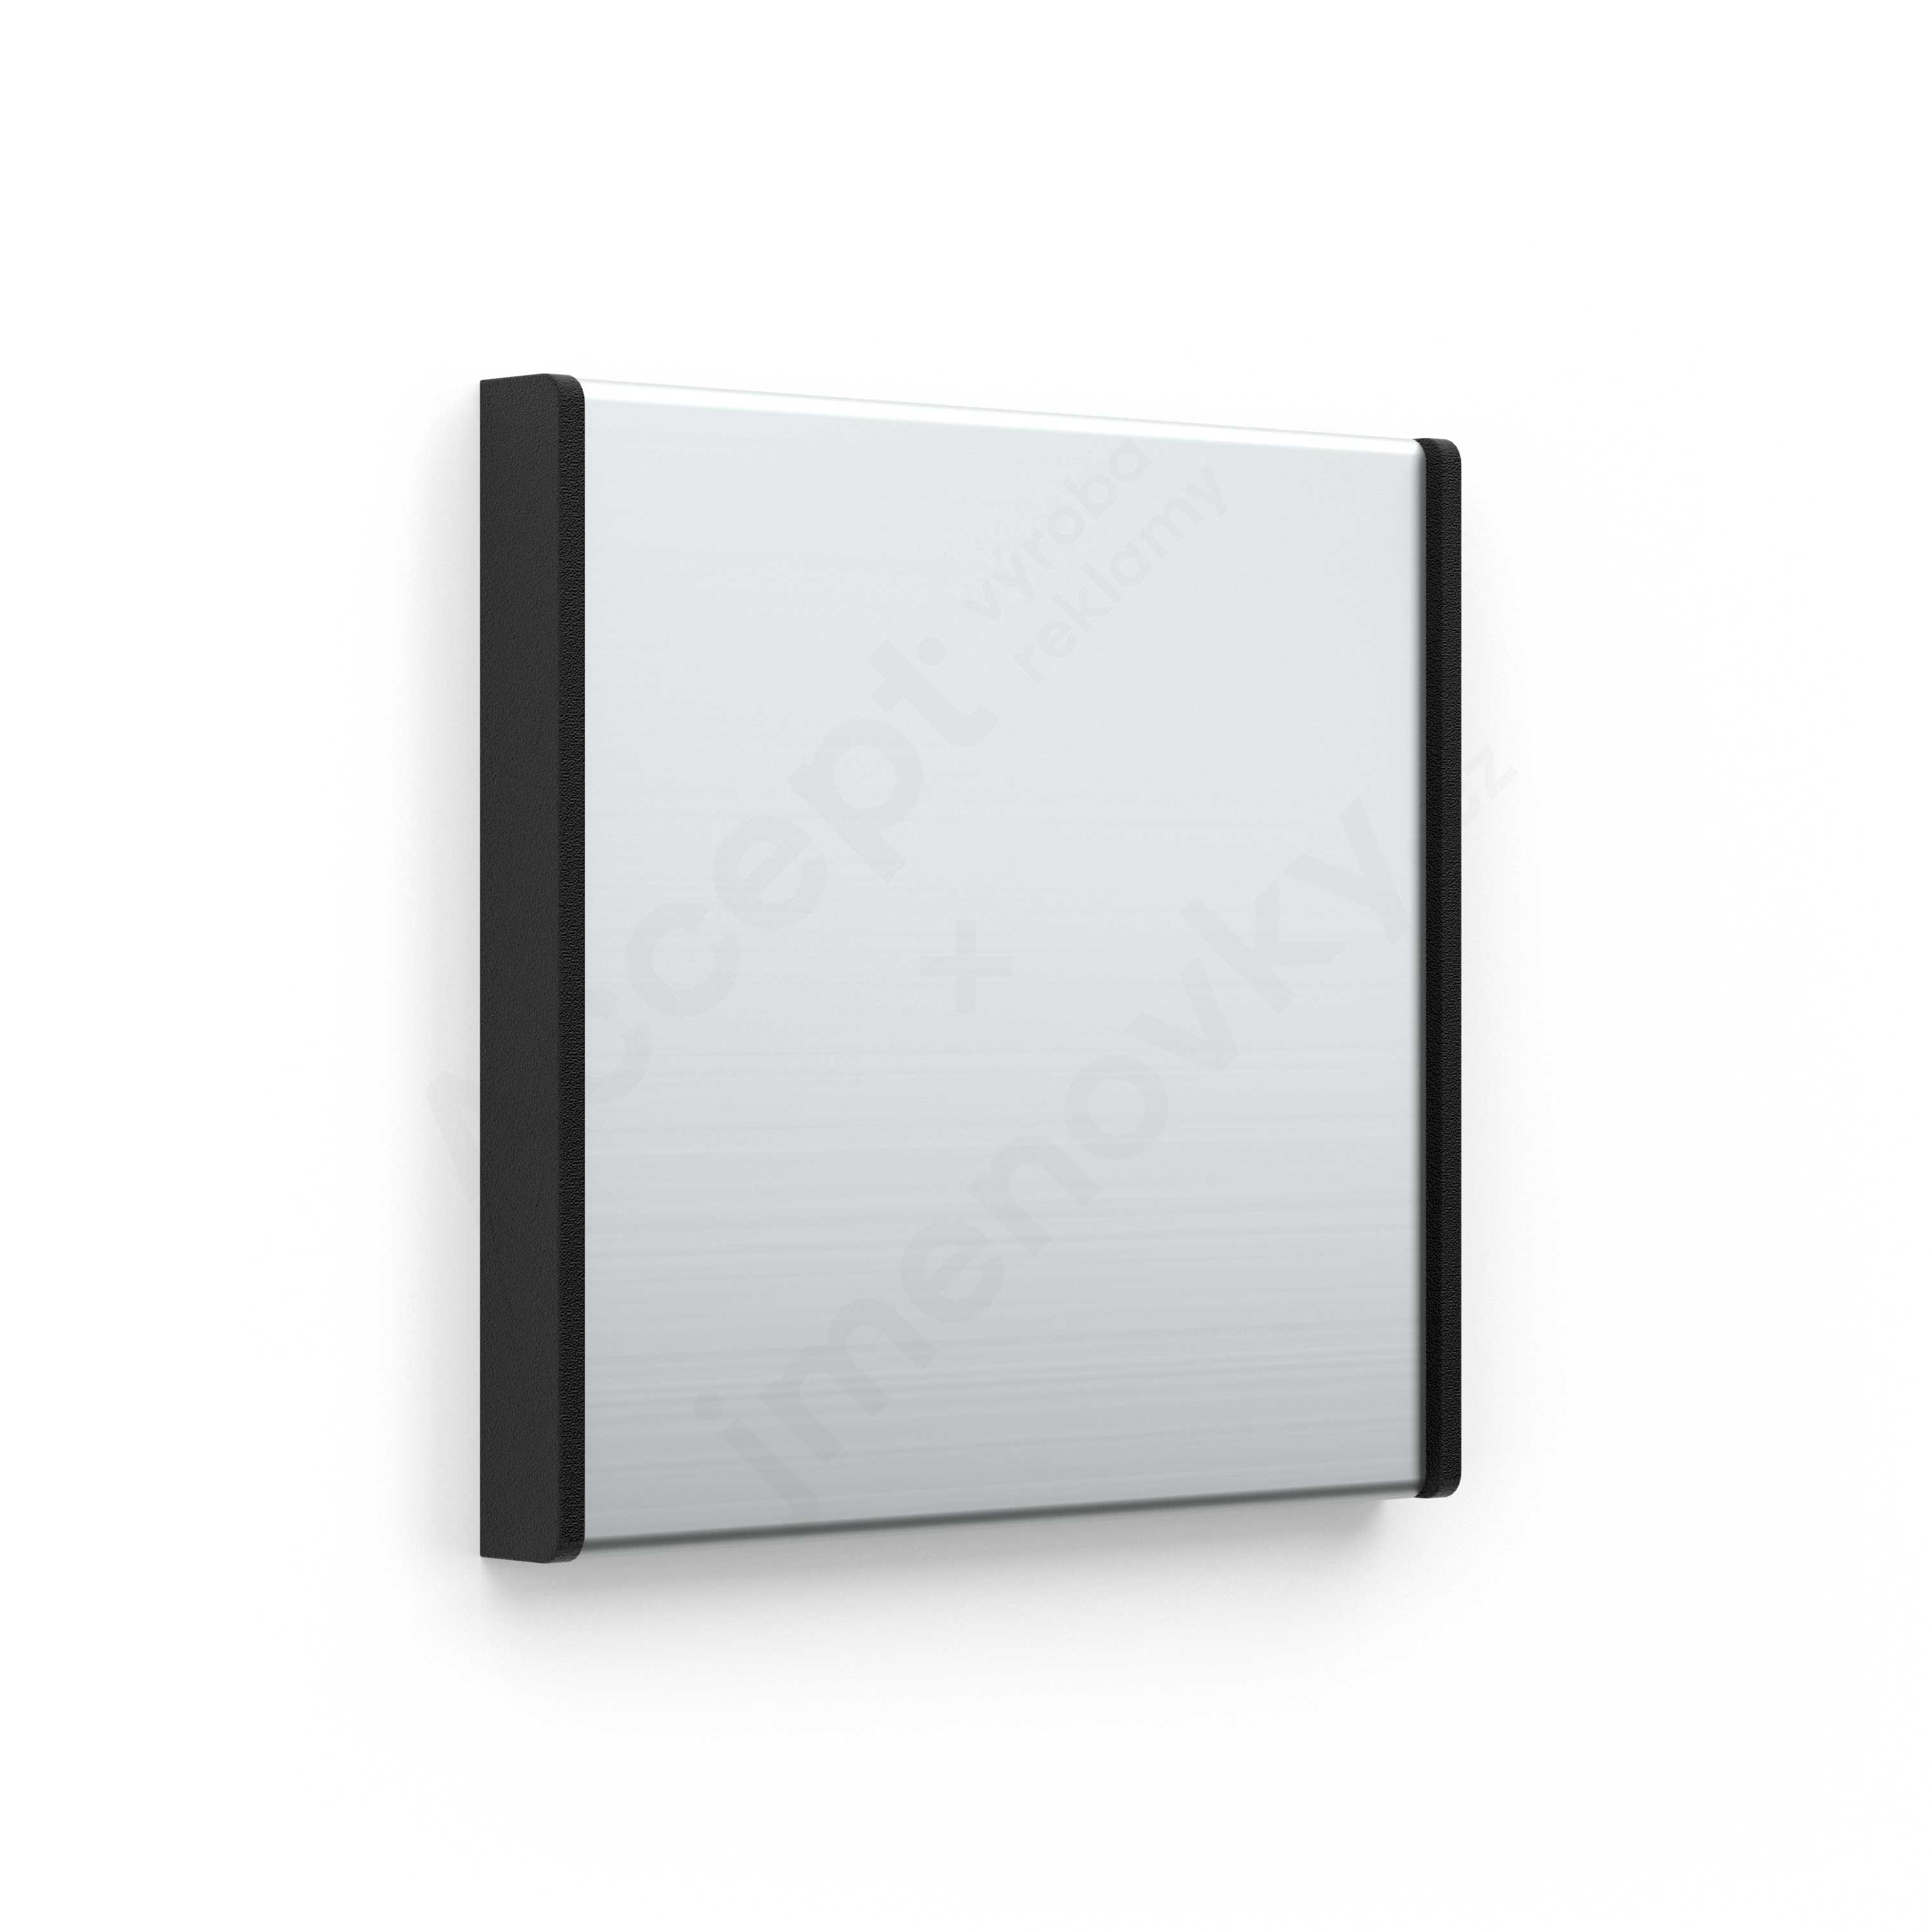 Dveřní tabulka ACS stříbrná čtvercová (nezásuvný systém, 93 x 93 mm)